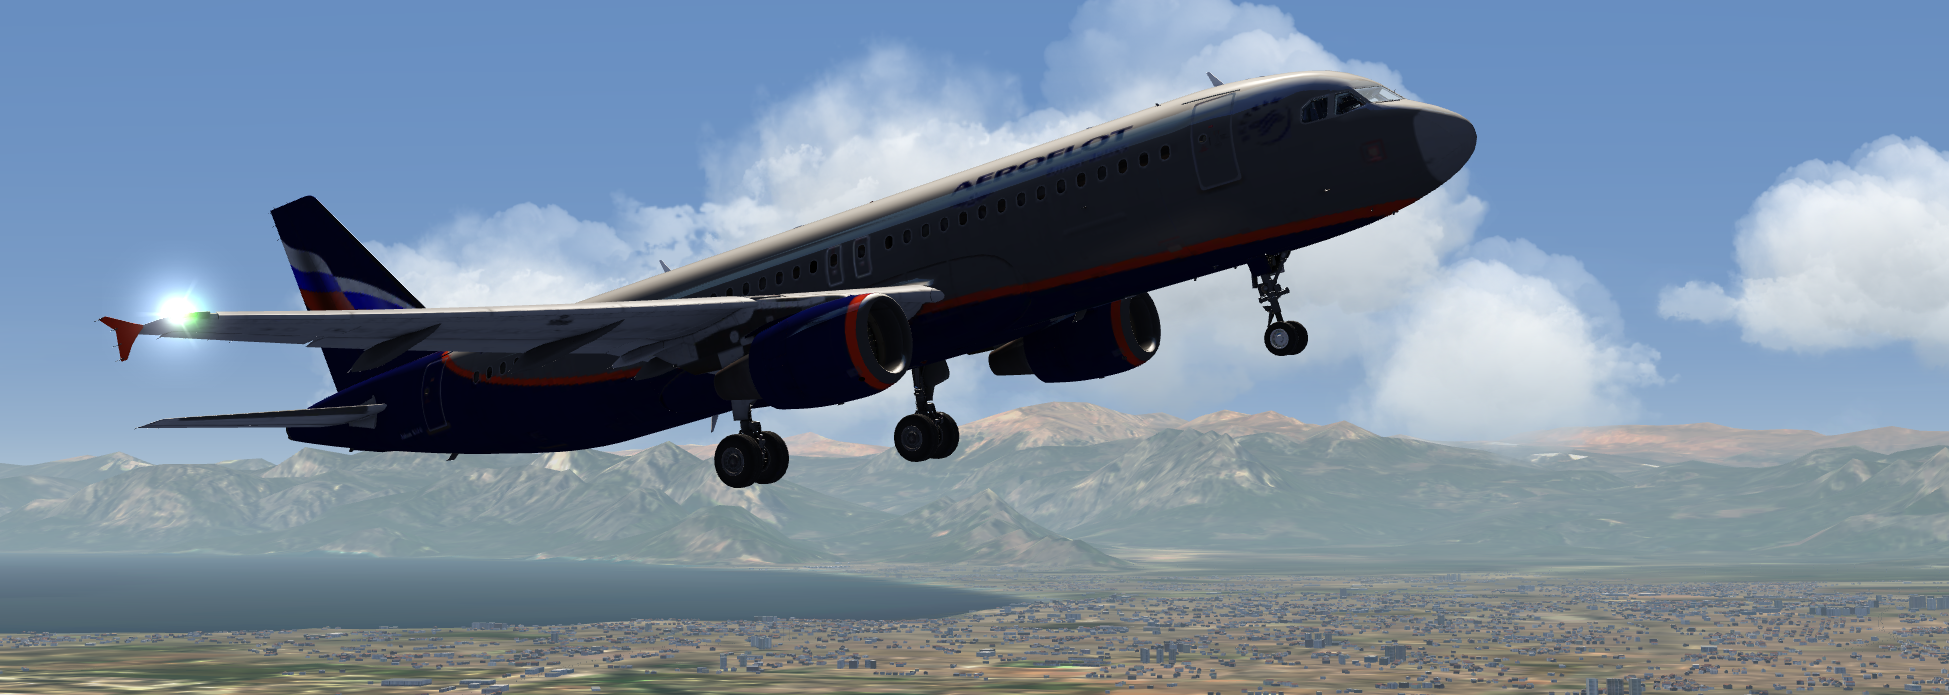 Takeoff at Antalya, Turkey.